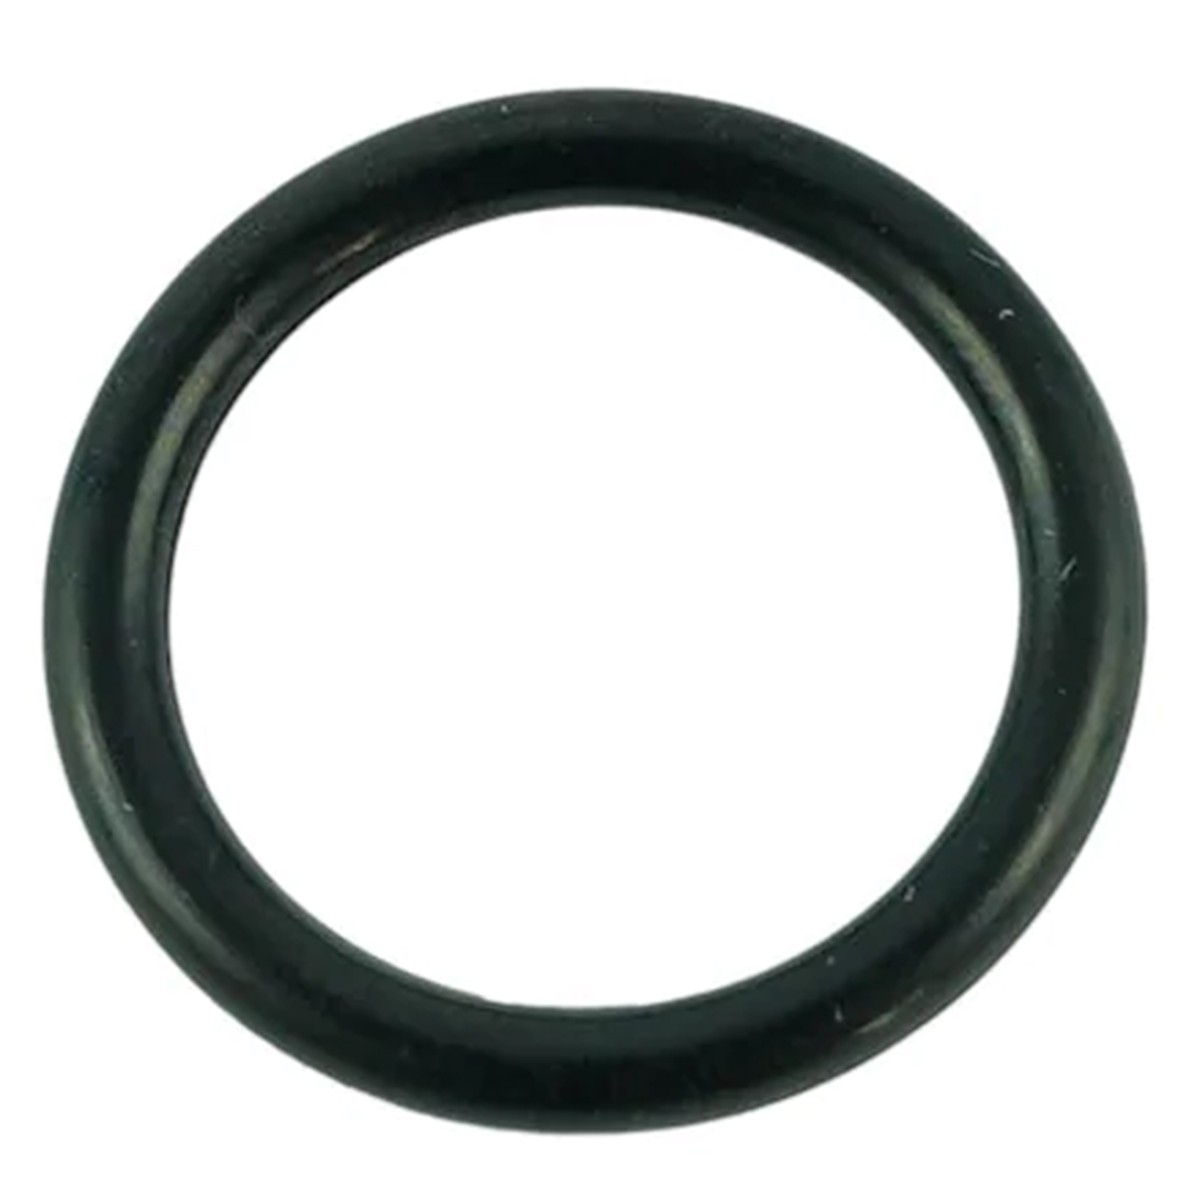 O-ring 15.80 x 2.40 mm / LS MT1.25 / LS MT3.35 / LS MT3.40 / LS MT3.50 / LS MT3.60 / S801016010 / 40029204